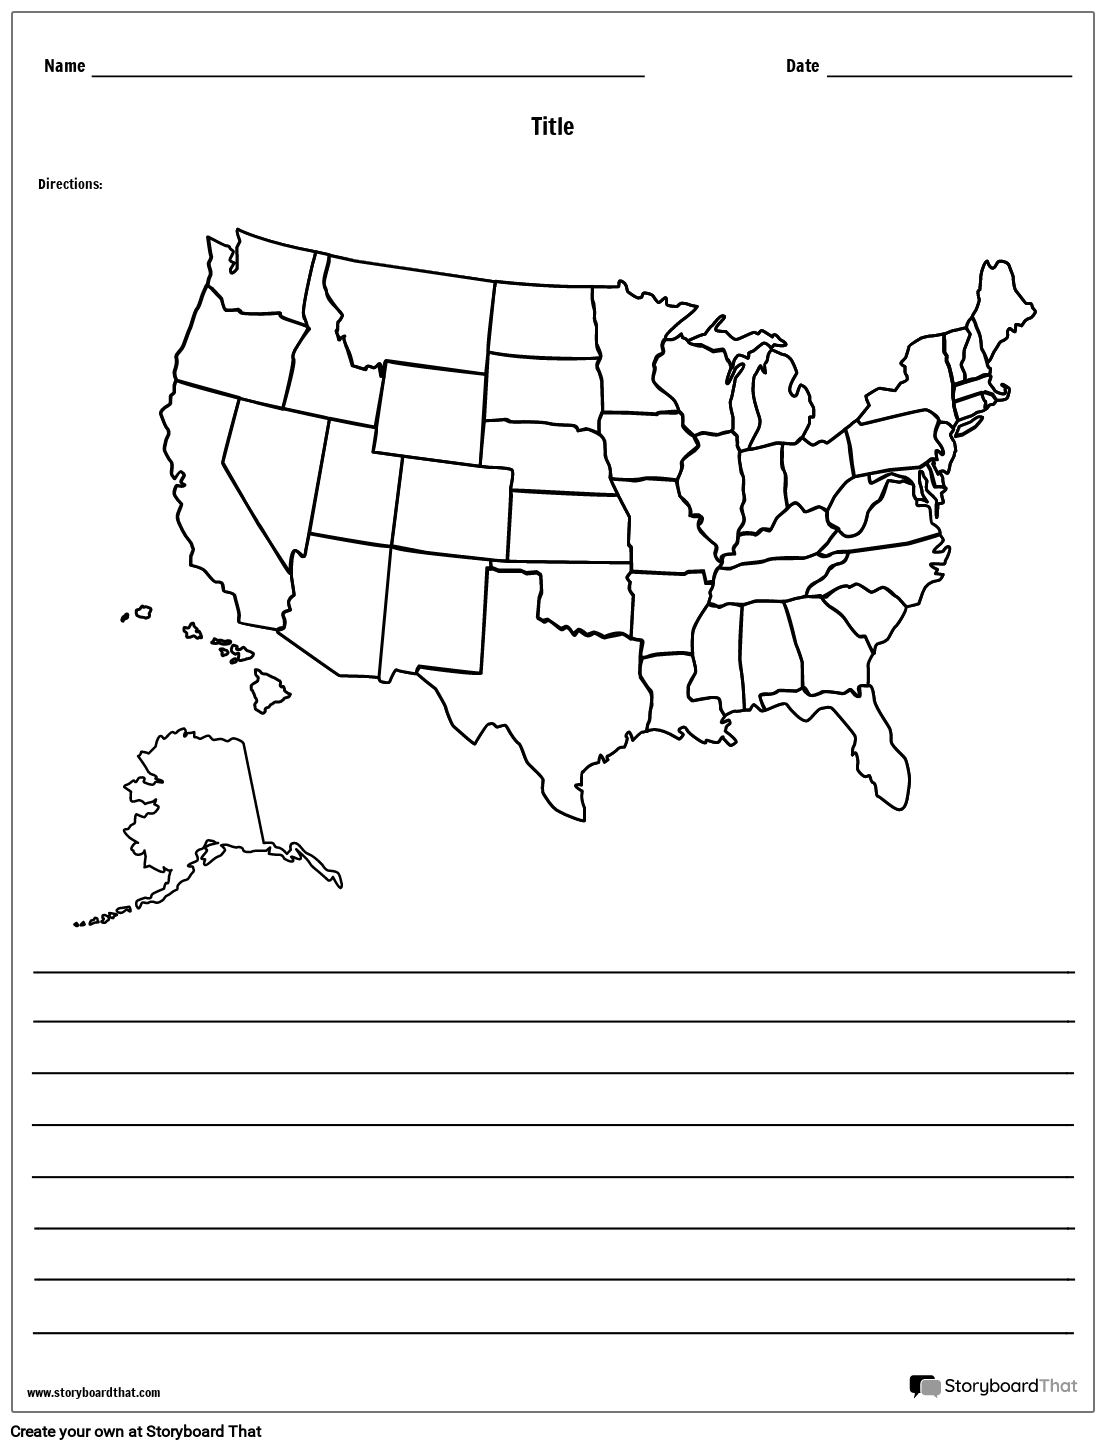 מפת ארצות הברית - עם קווים